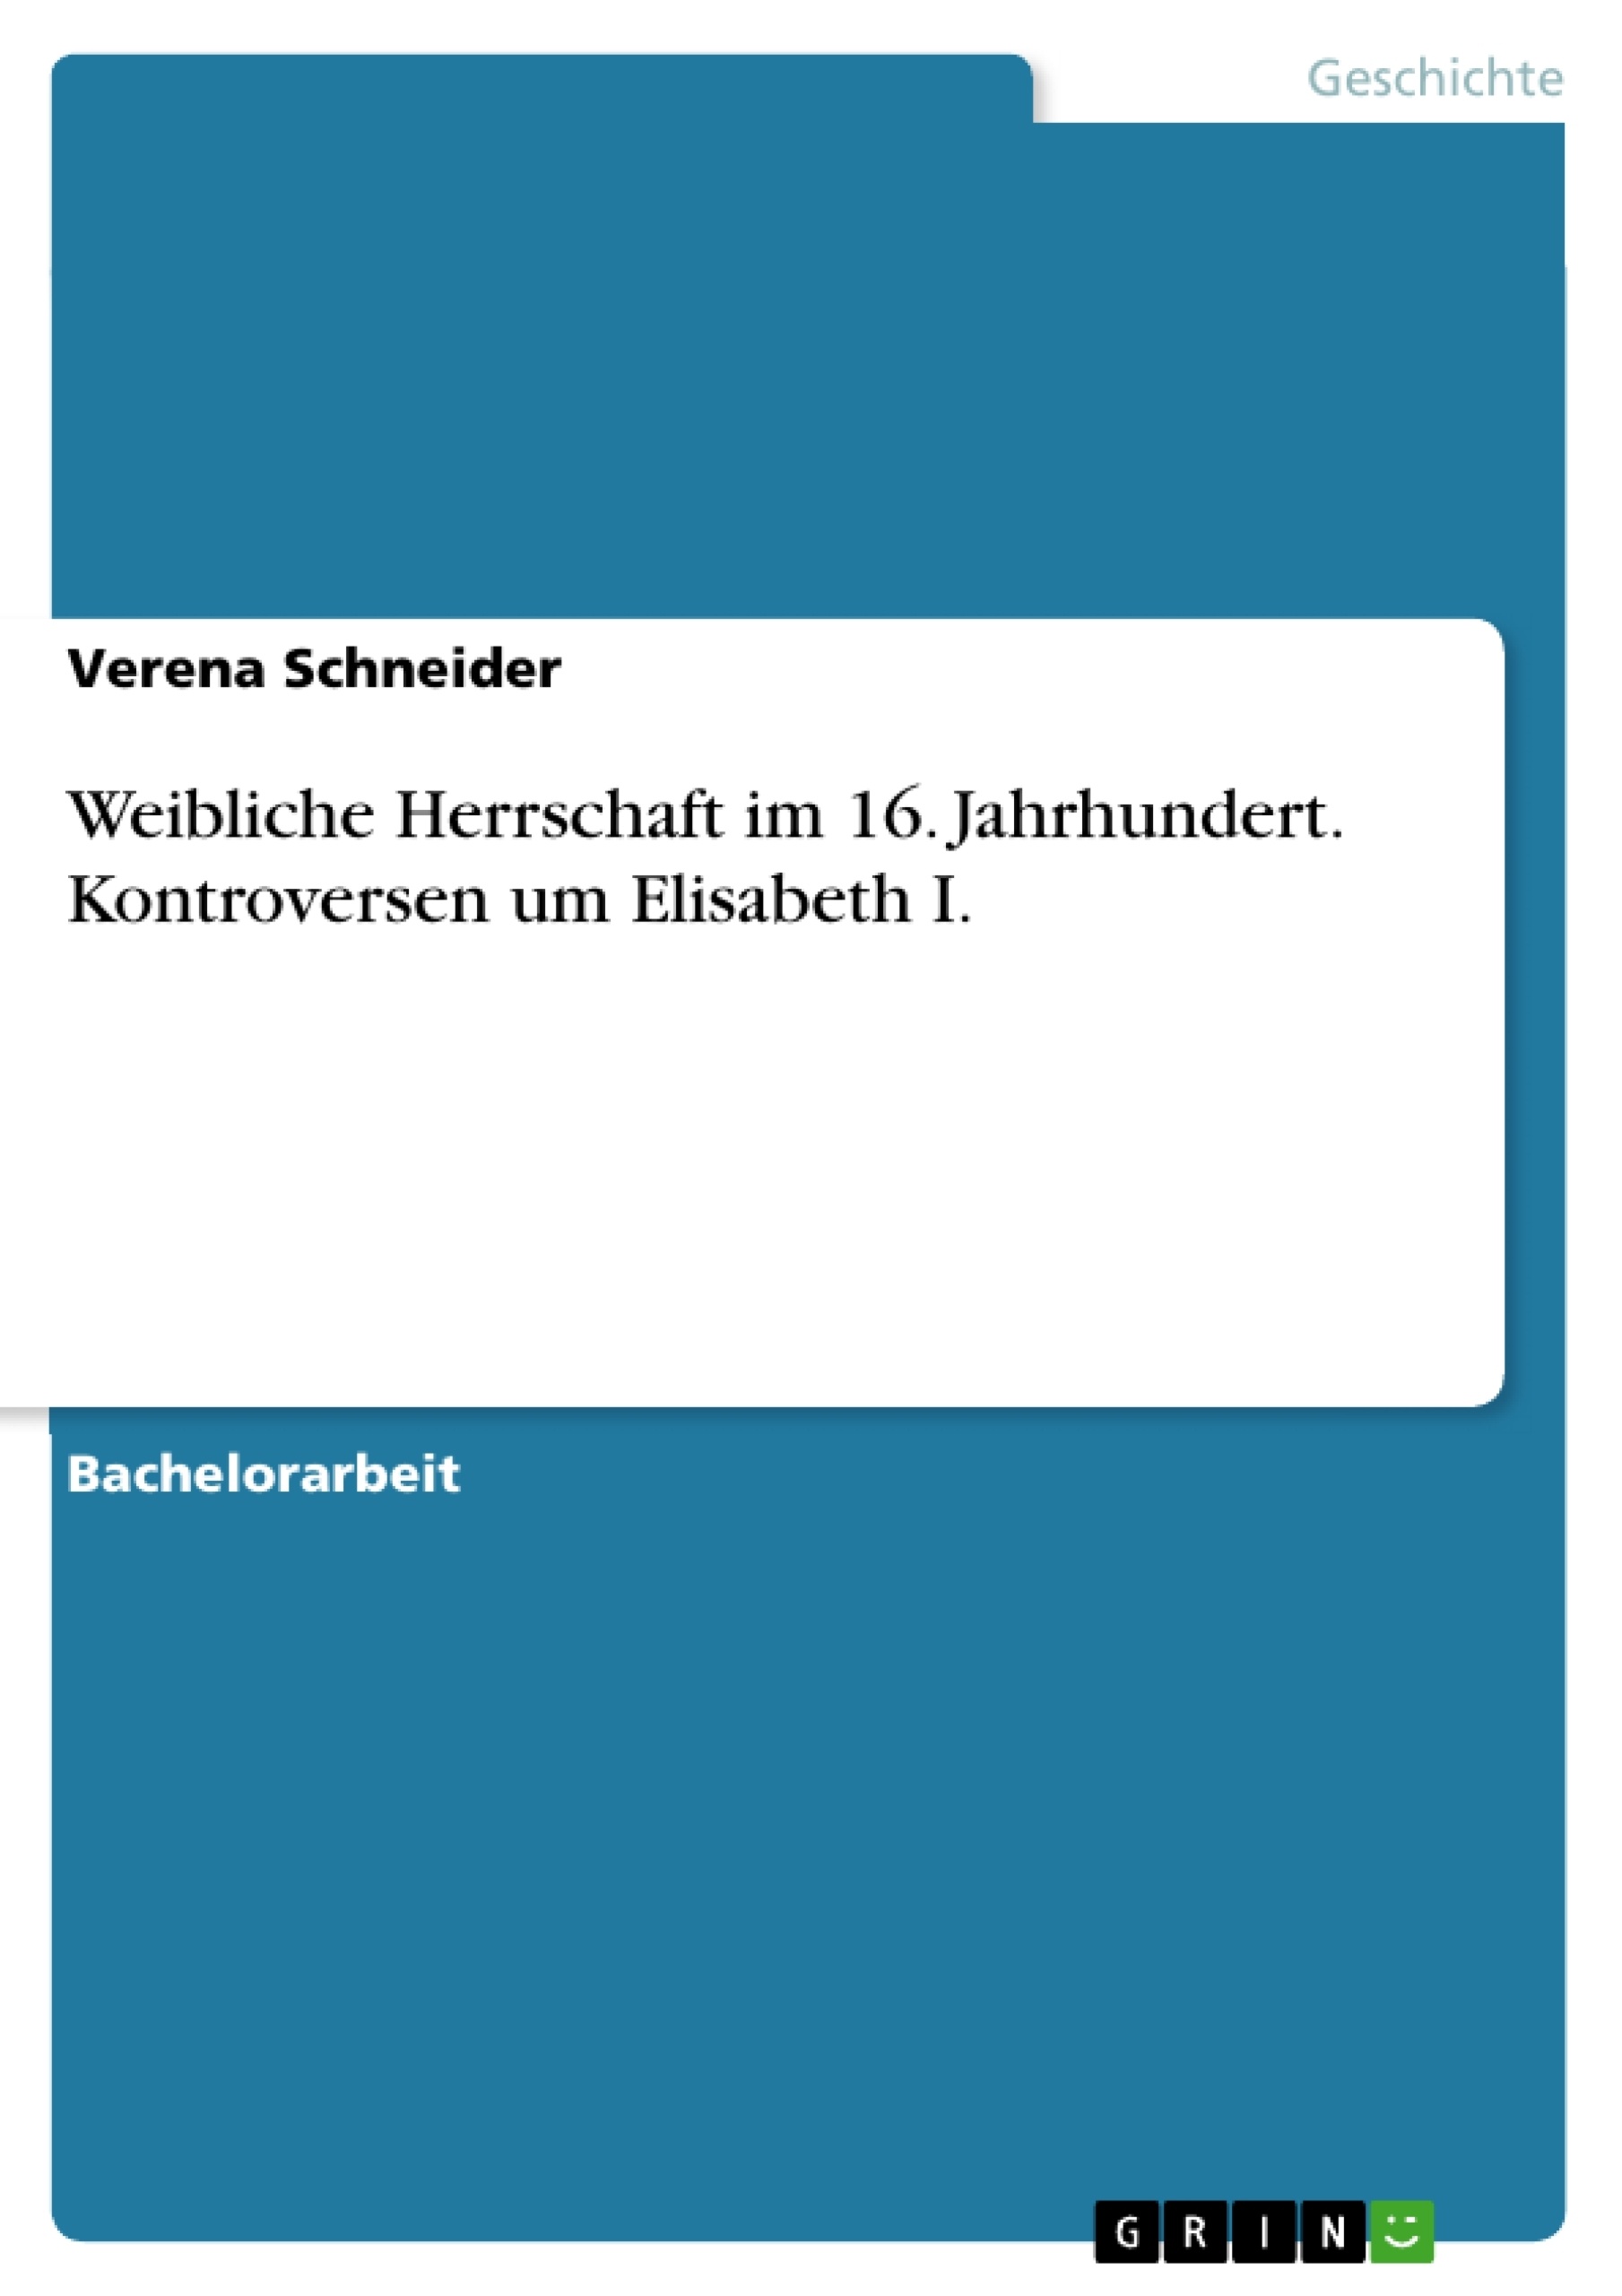 Titre: Weibliche Herrschaft im 16. Jahrhundert. Kontroversen um Elisabeth I.